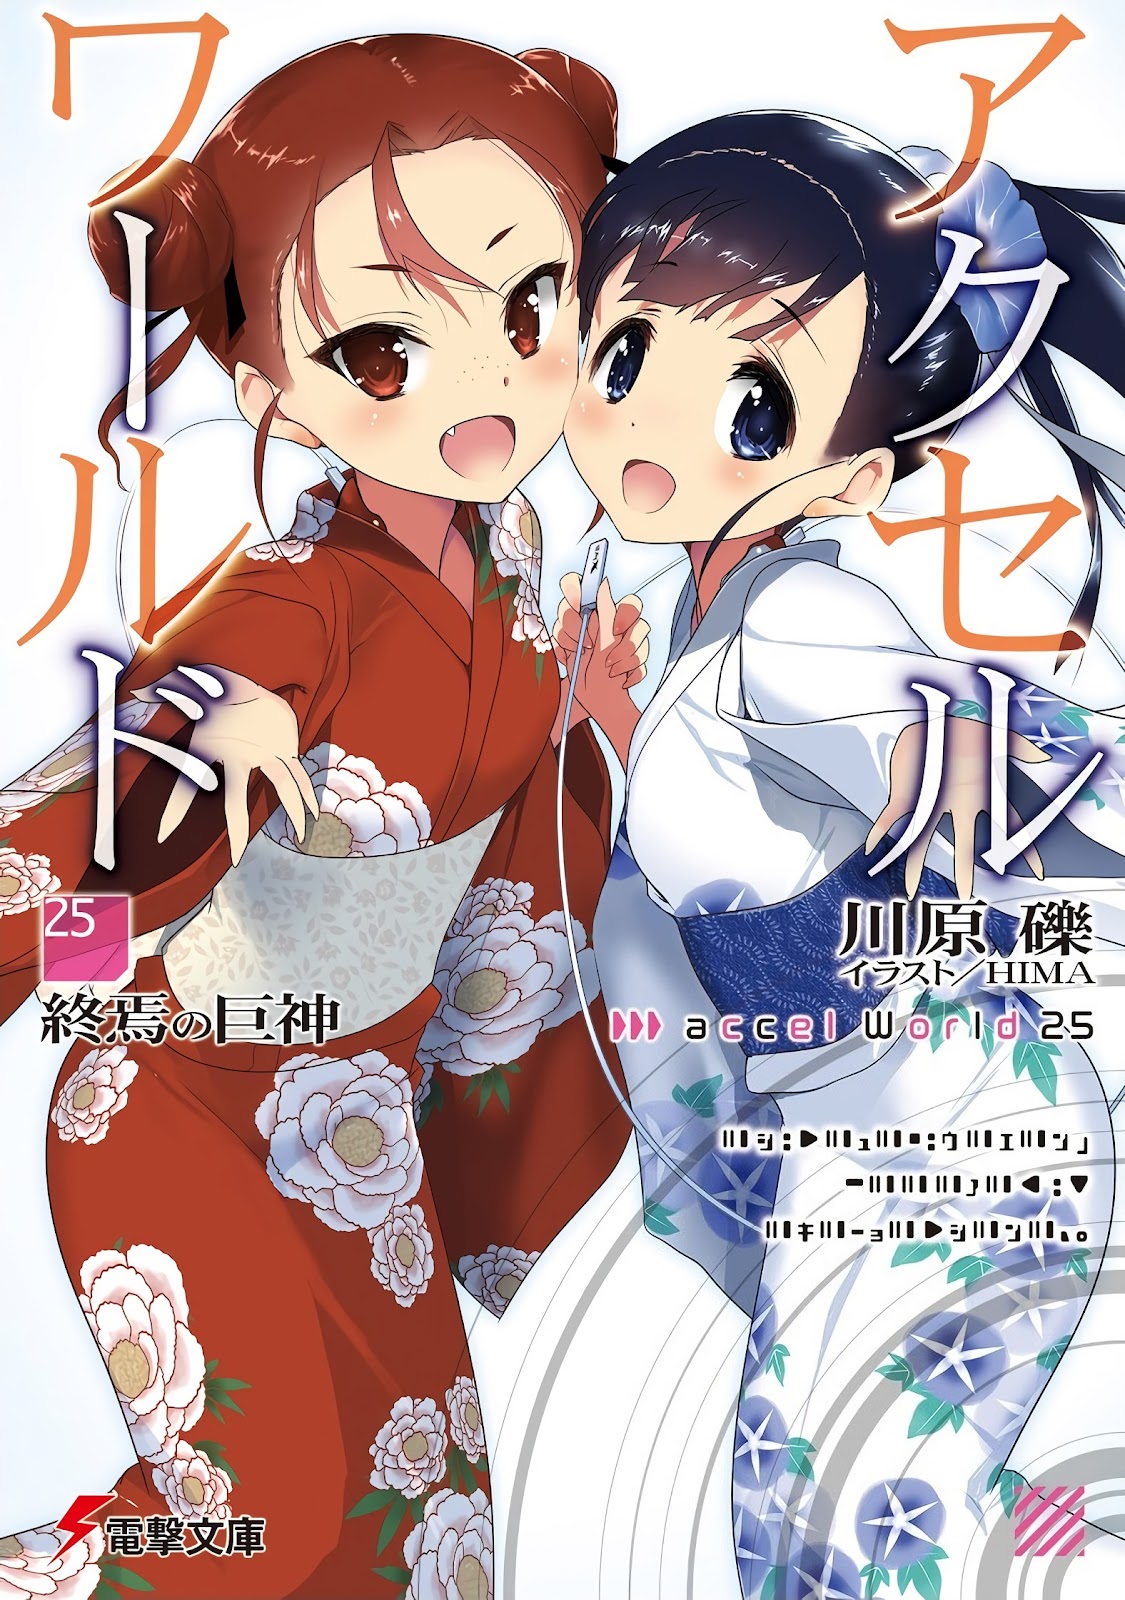 Ilustrasi Light Novel Accel World - Volume 25